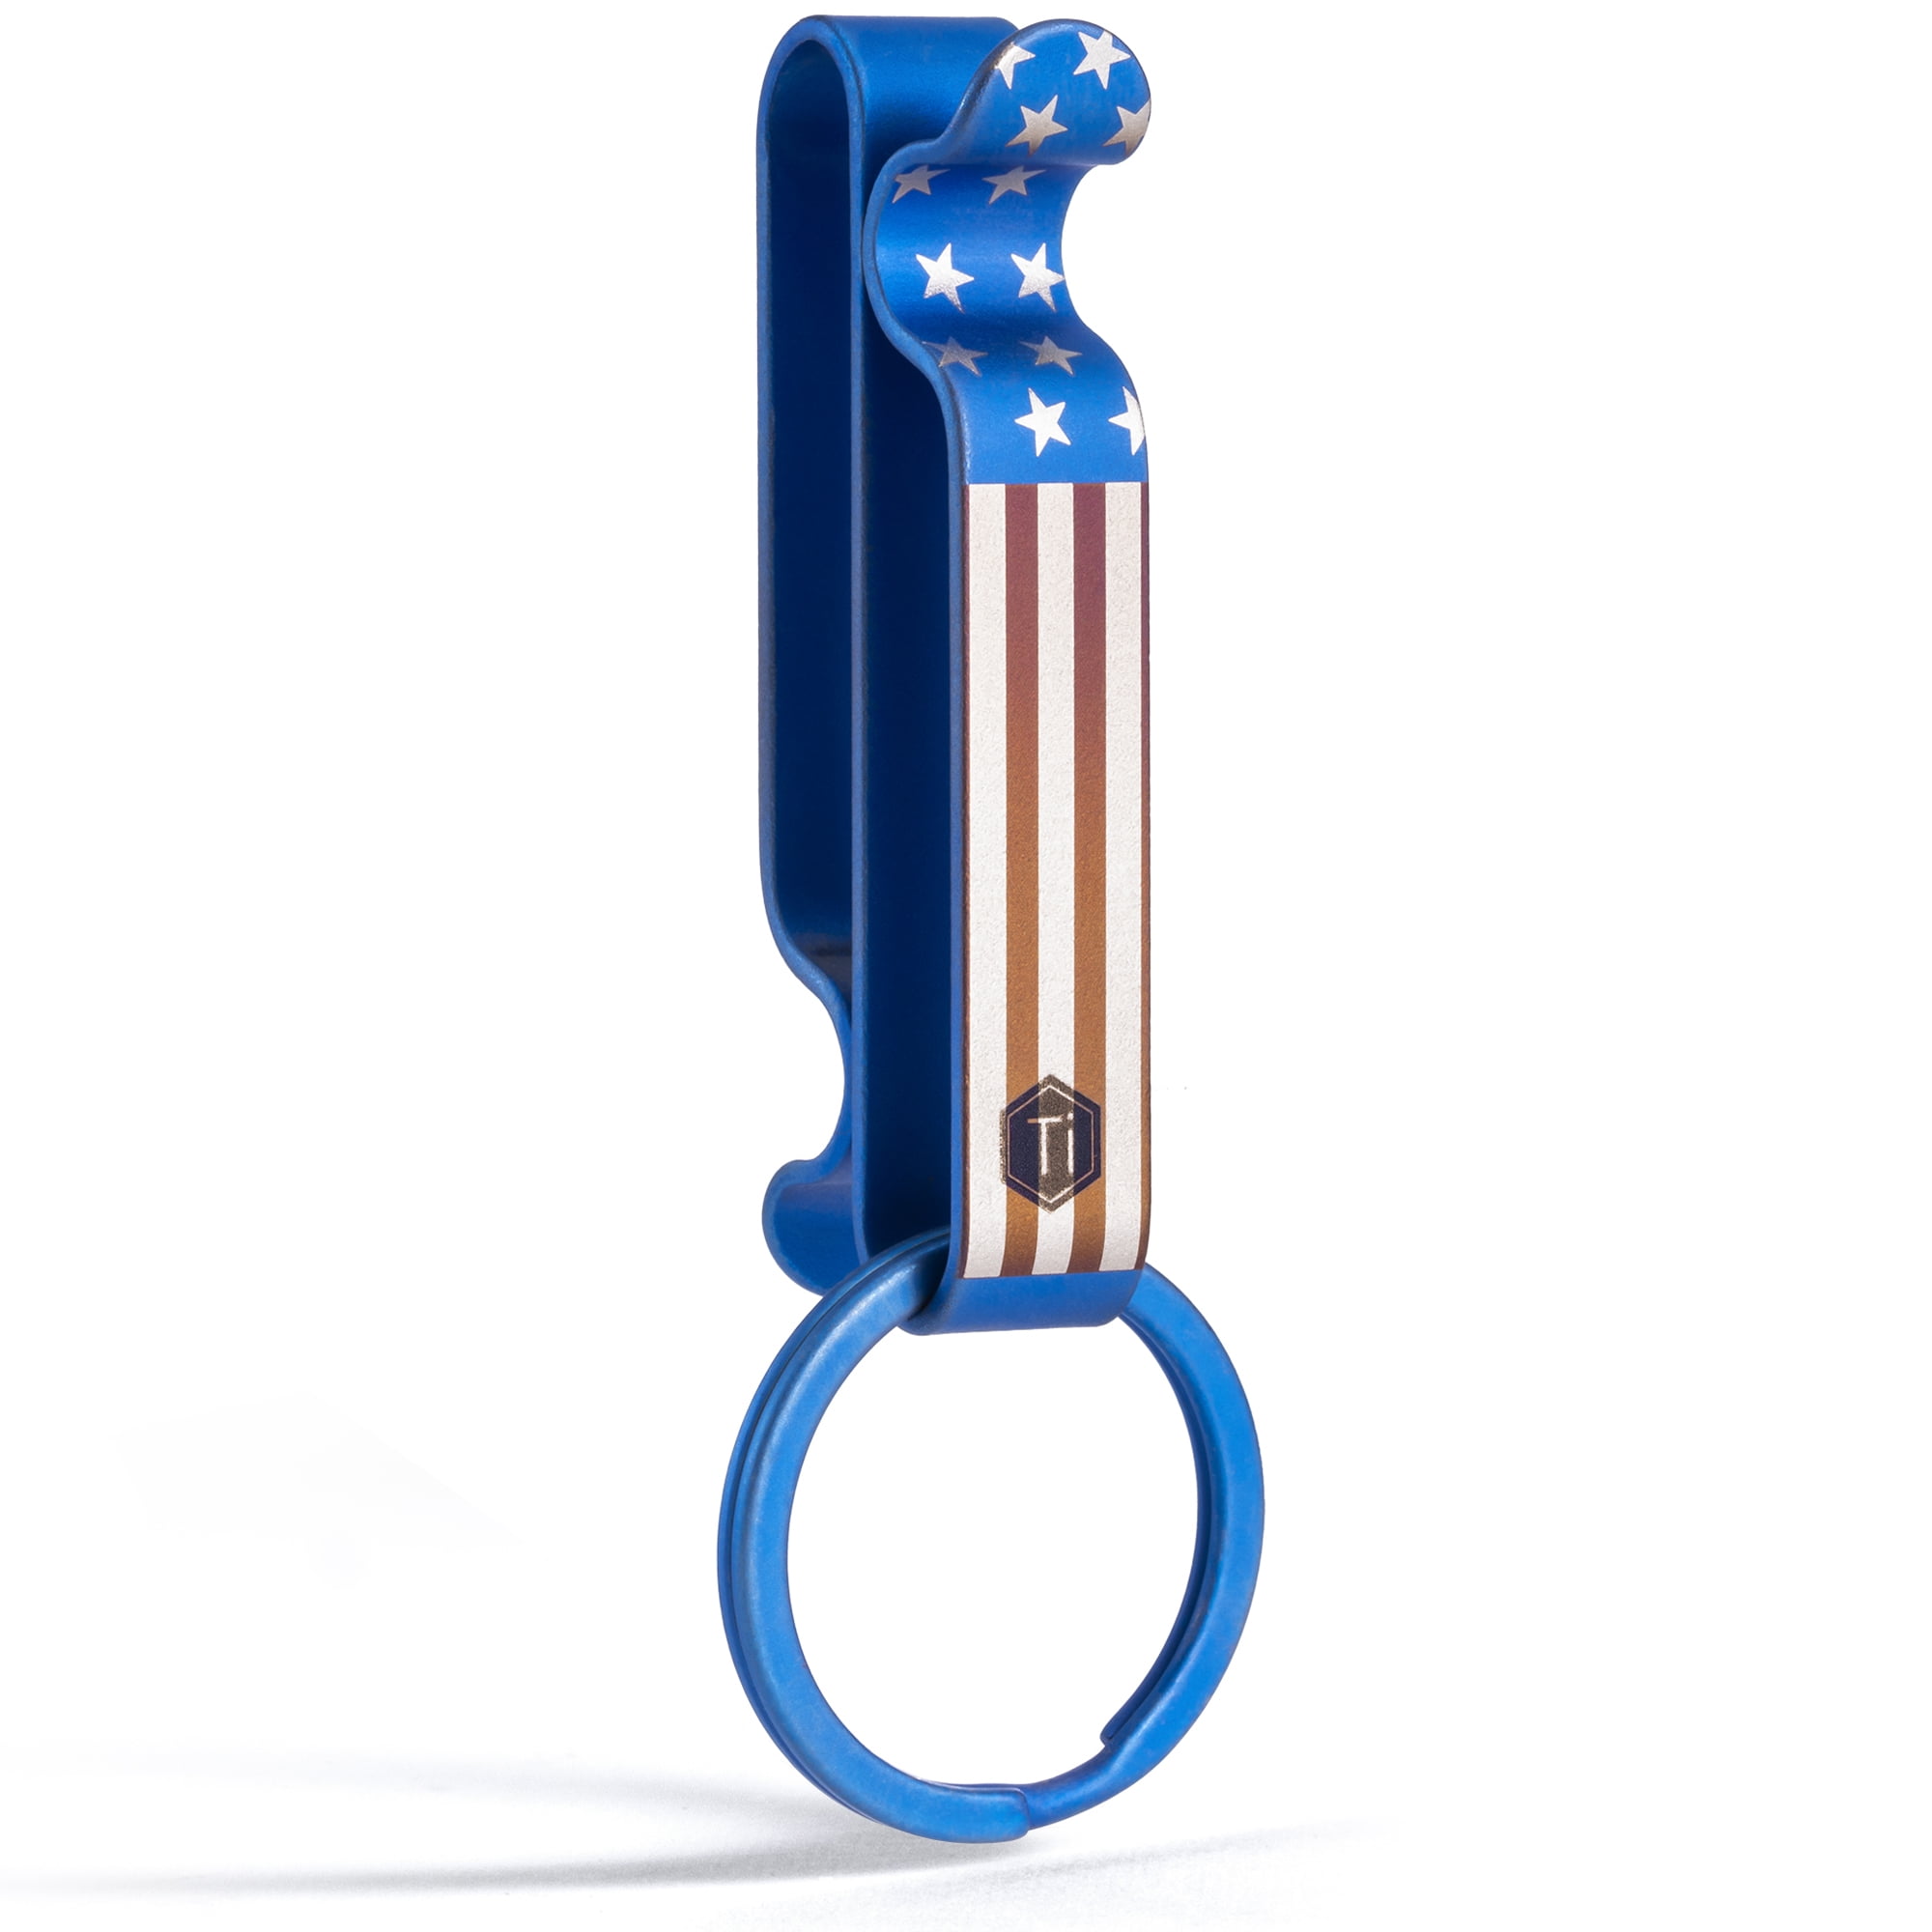 TISUR Titanium Key Rings for Keychain, Side-Pushing Key Chain